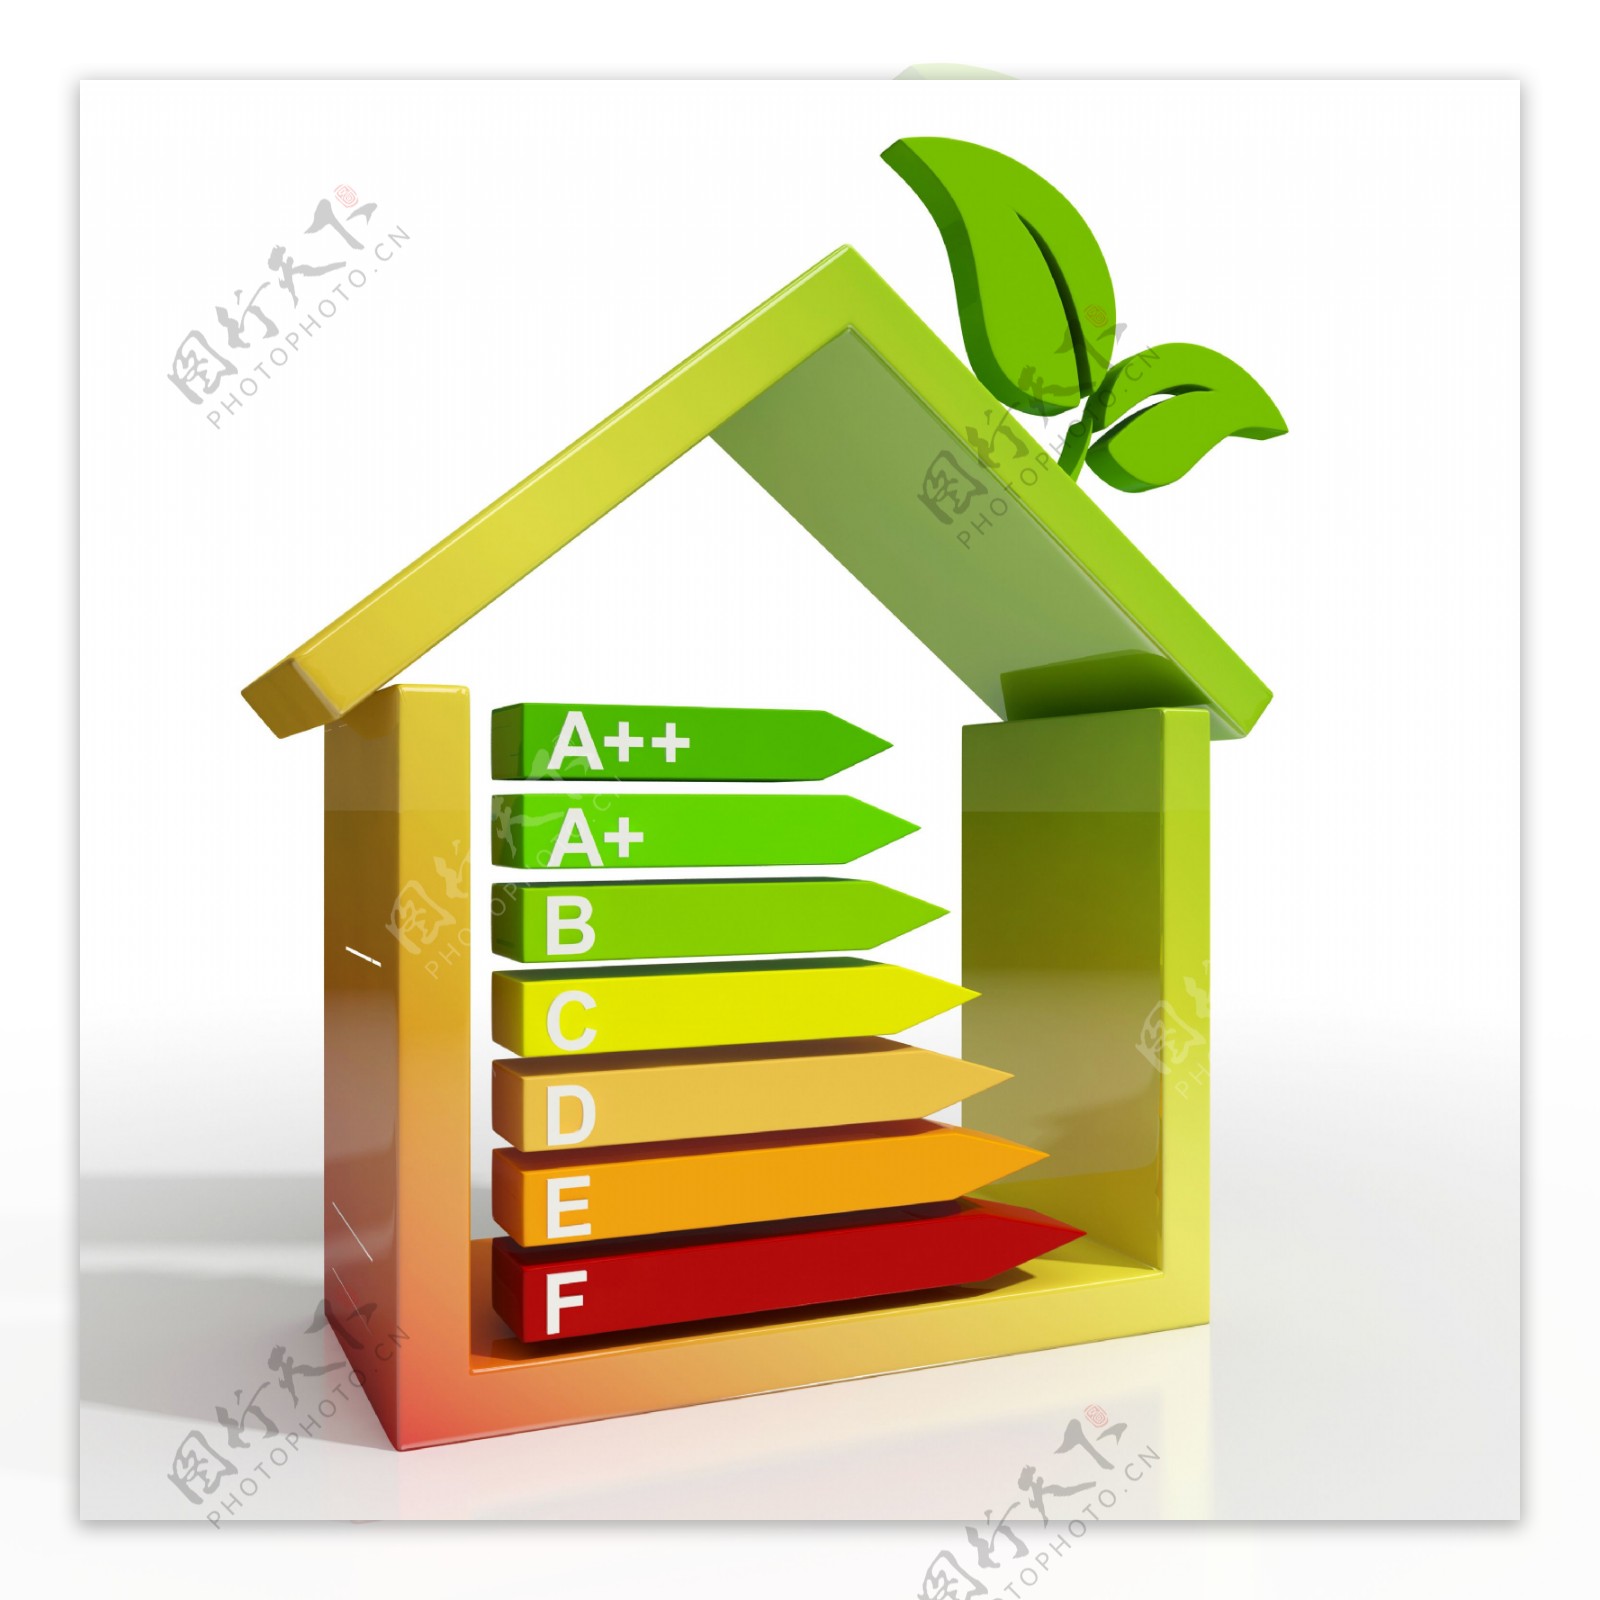 能源效率等级图标显示温室